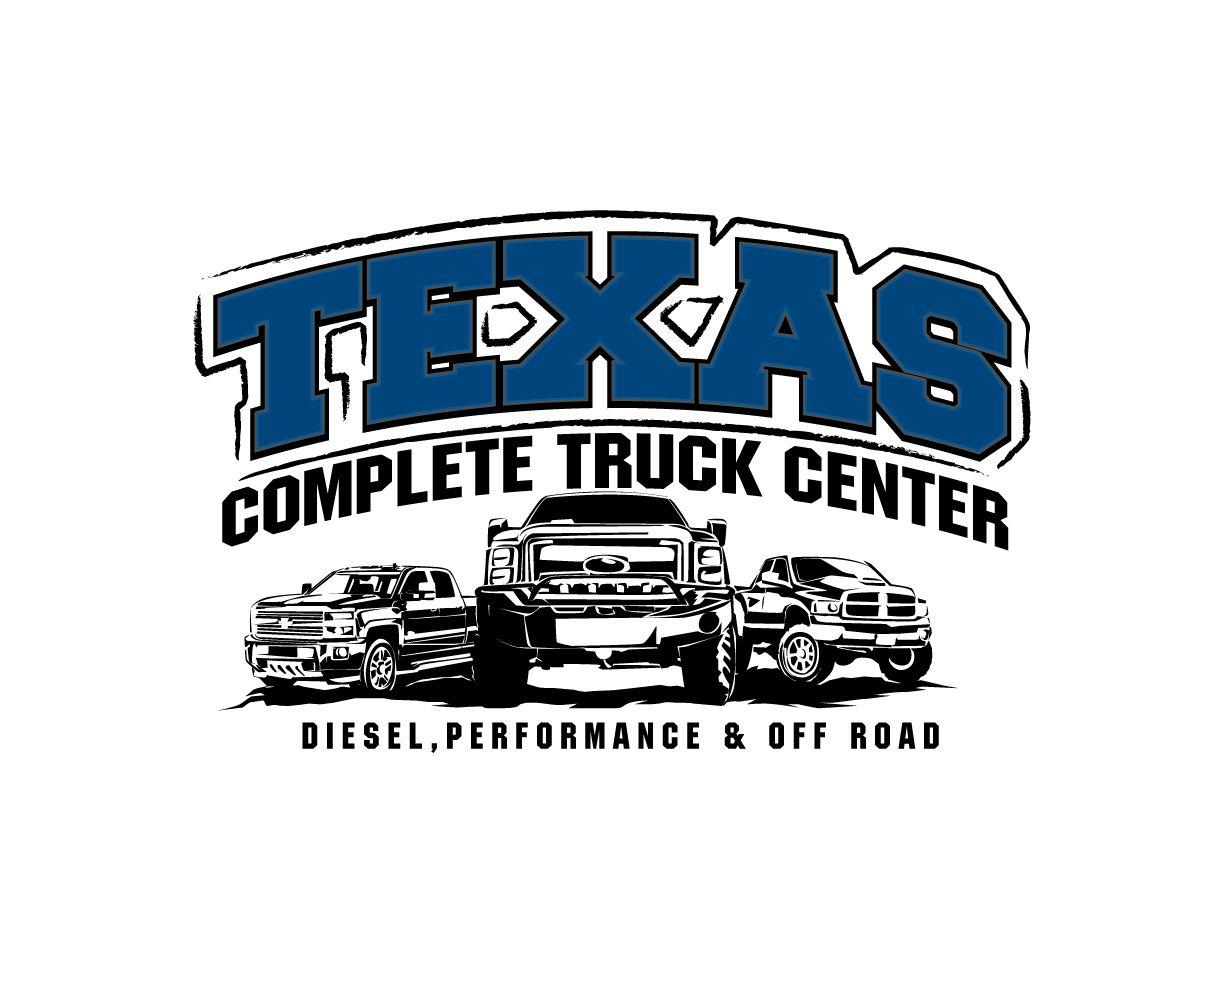 Diesel Shop Logo - Elegant, Playful, Shop Logo Design for TEXAS COMPLETE TRUCK CENTER ...